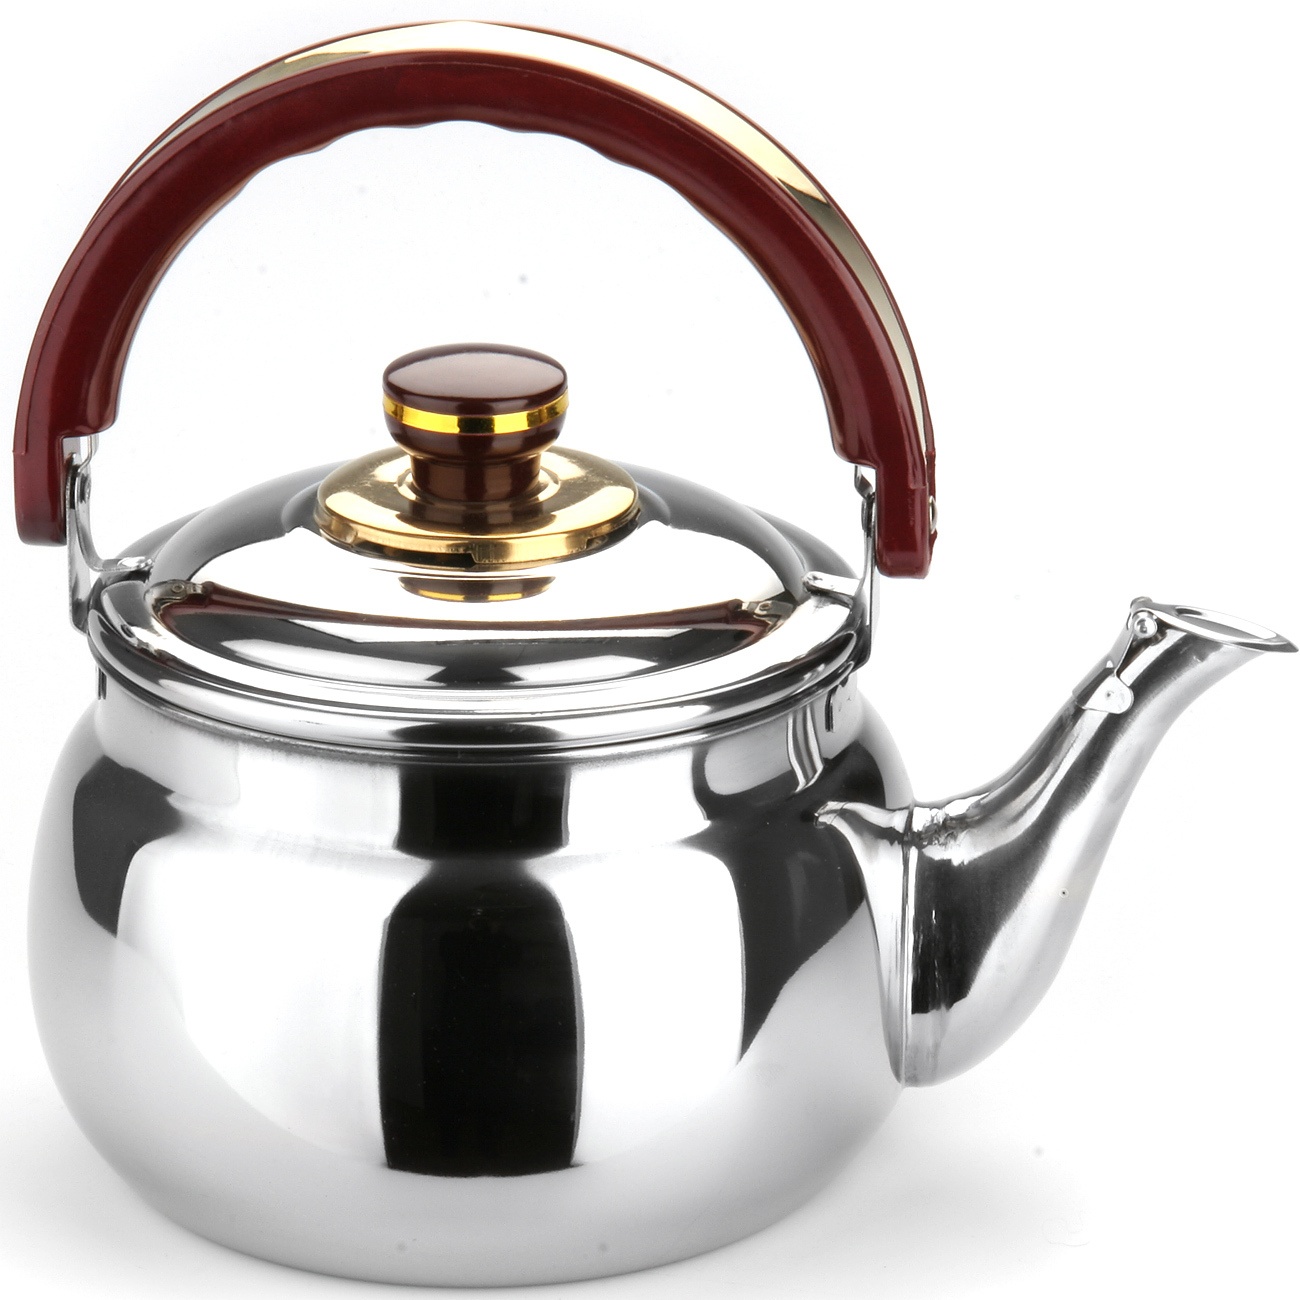 Качественные чайники для газовых плит. Mayer & Boch чайник 1037 4 л. Чайник Mayer&Boch 4 л. Чайник Mayer&Boch, 3 л. Чайник Mayer&Boch, 3.2 л.